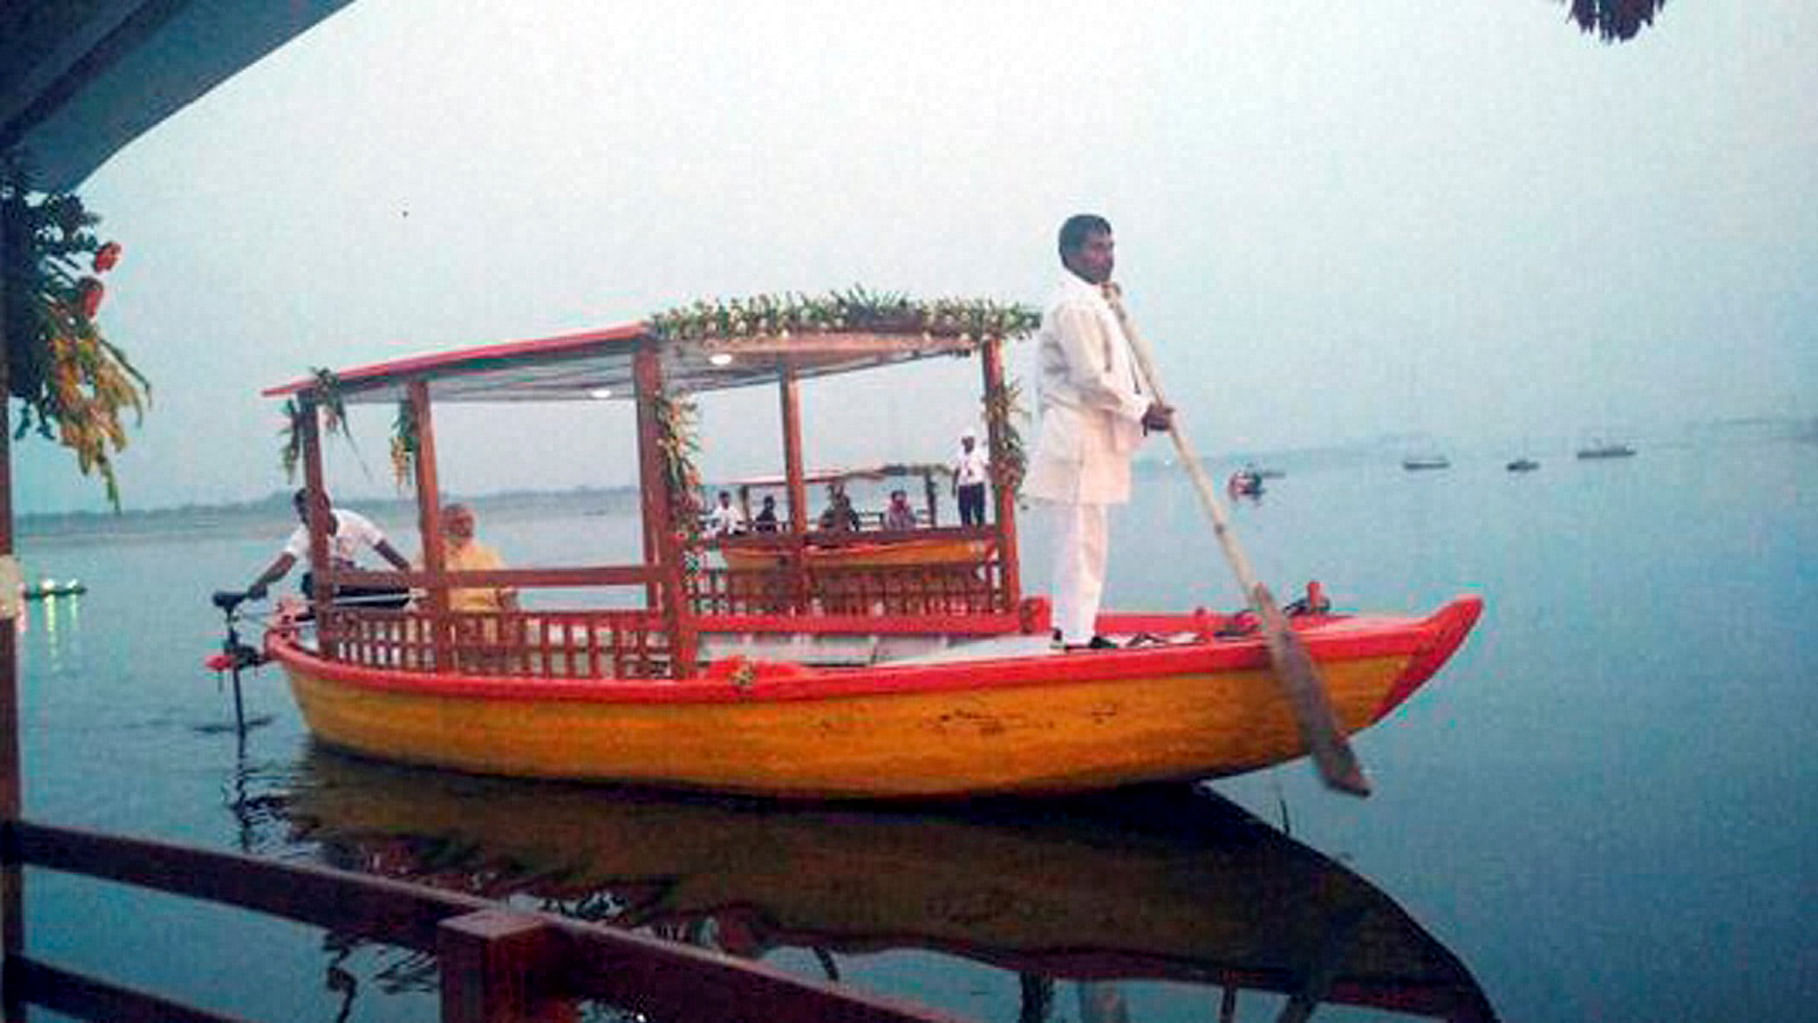 Prime Minister Narendra Modi on the e-boat in Varanasi.(Photo: PTI)